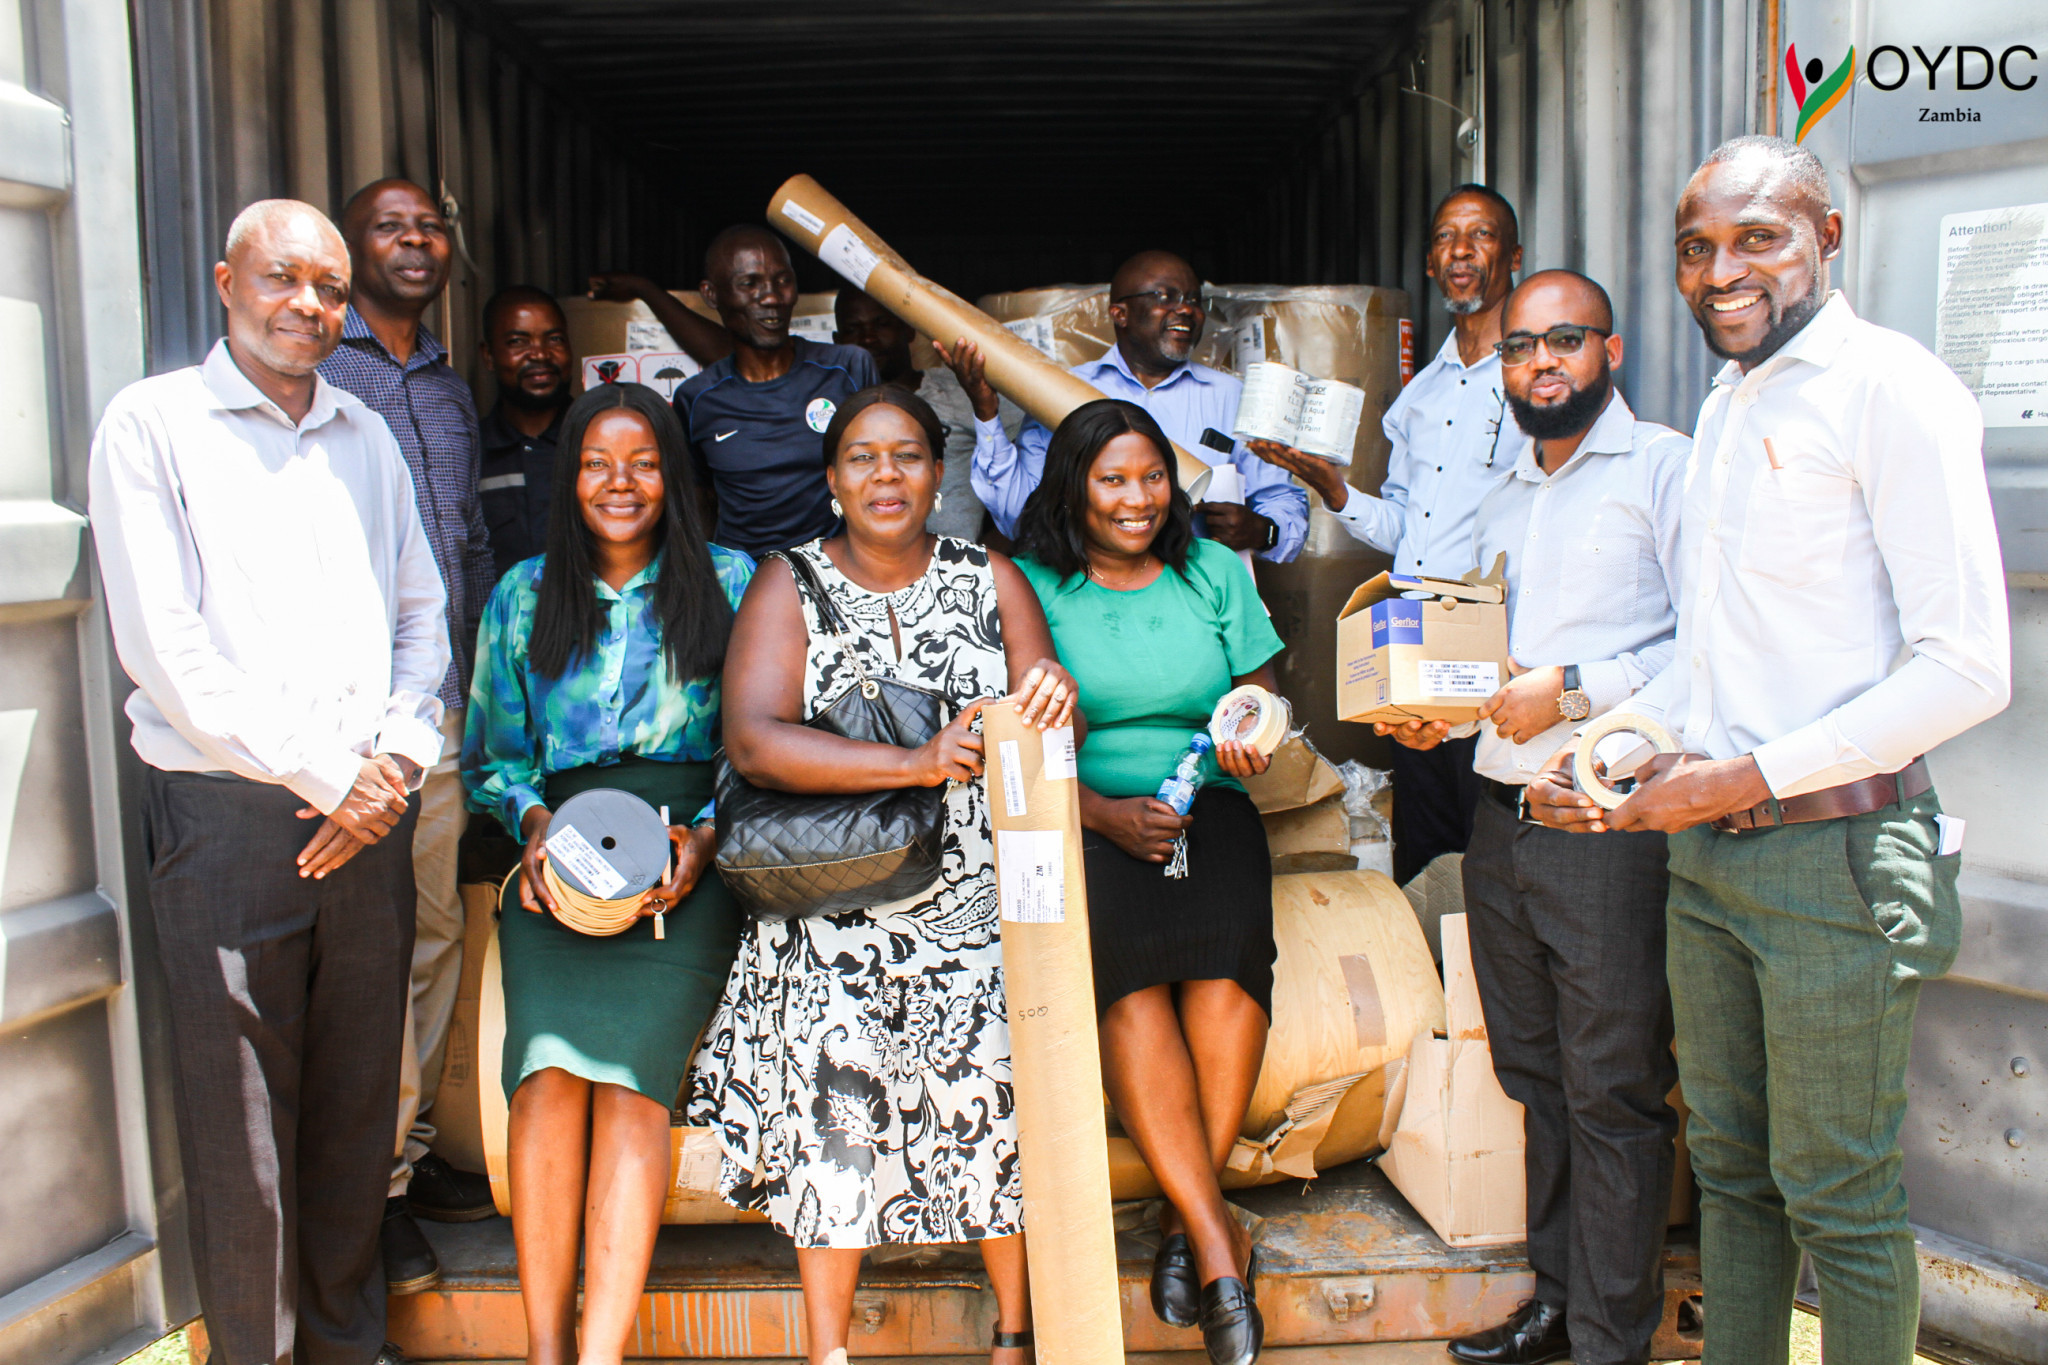 Major donation to OYDC Zambia